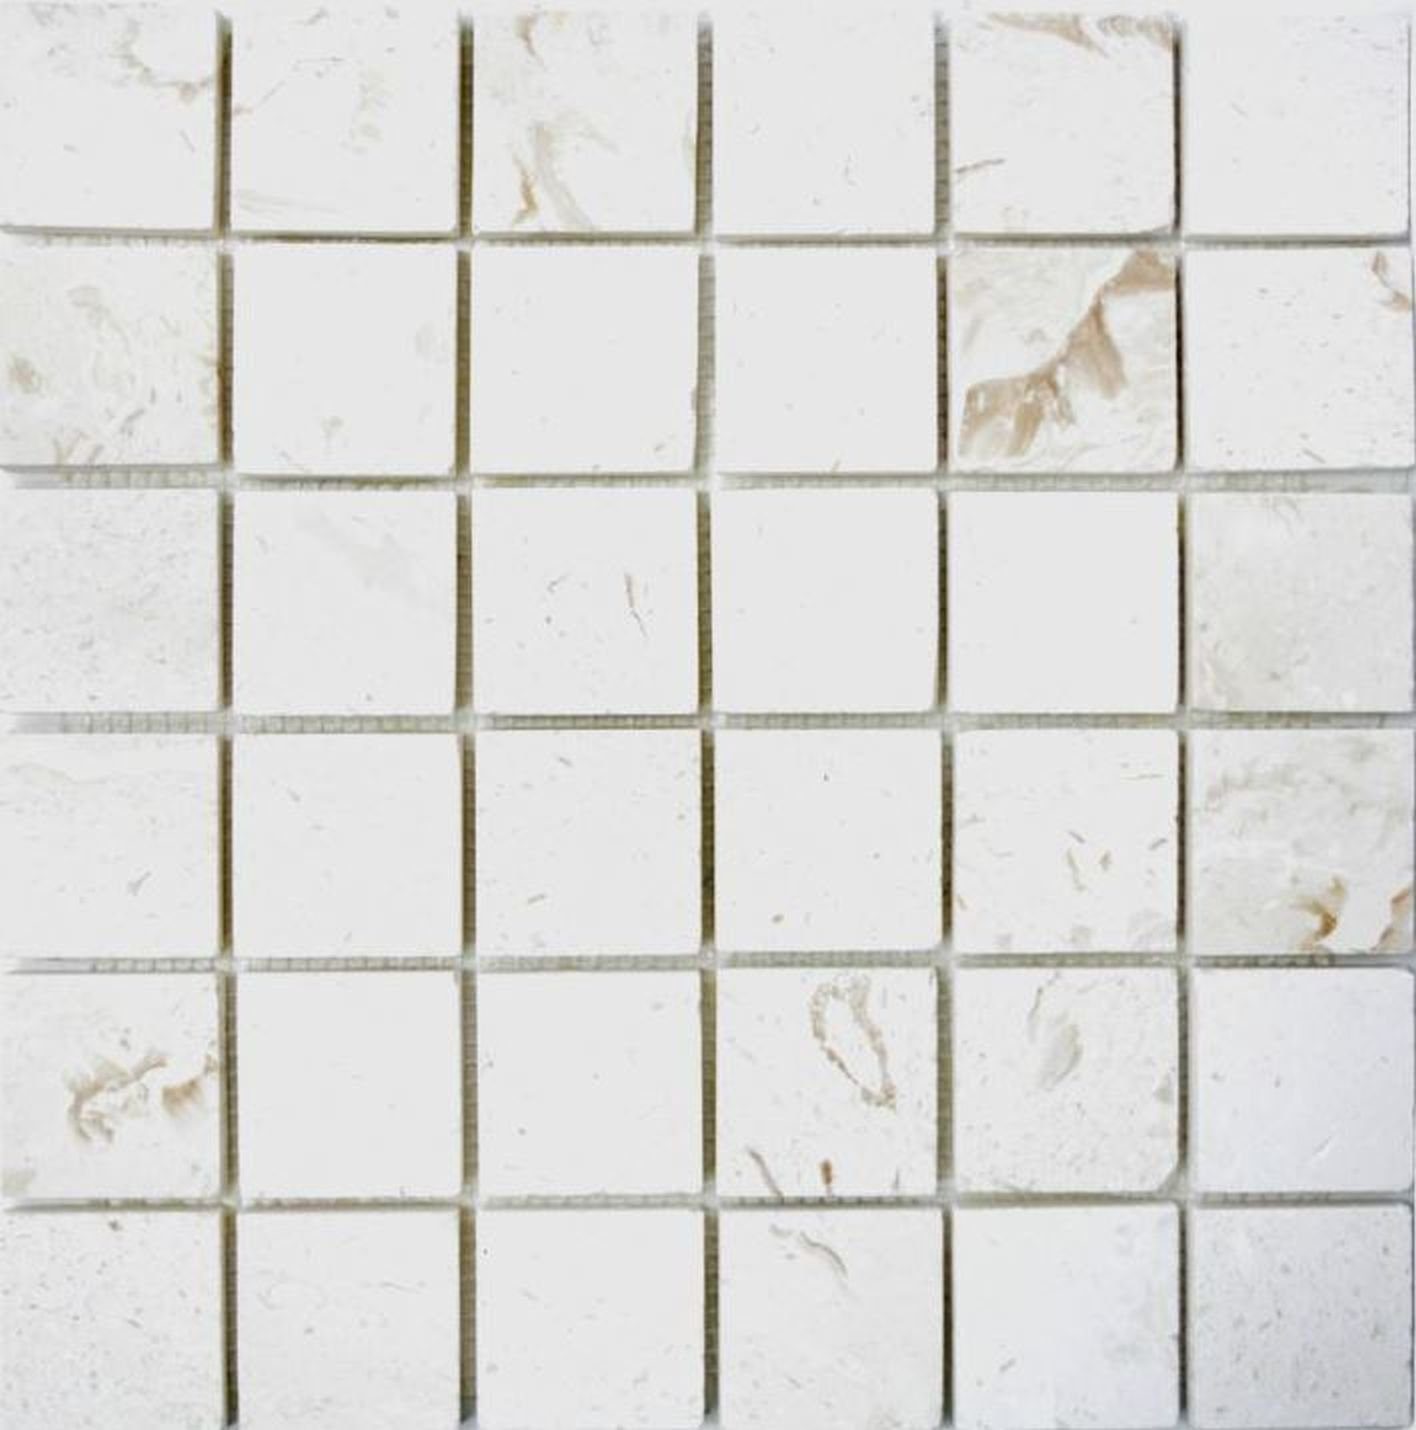 Mosani Mosaikfliesen Kalkstein Mosaik Naturstein Boden Wand Medio weiß gelbweiß